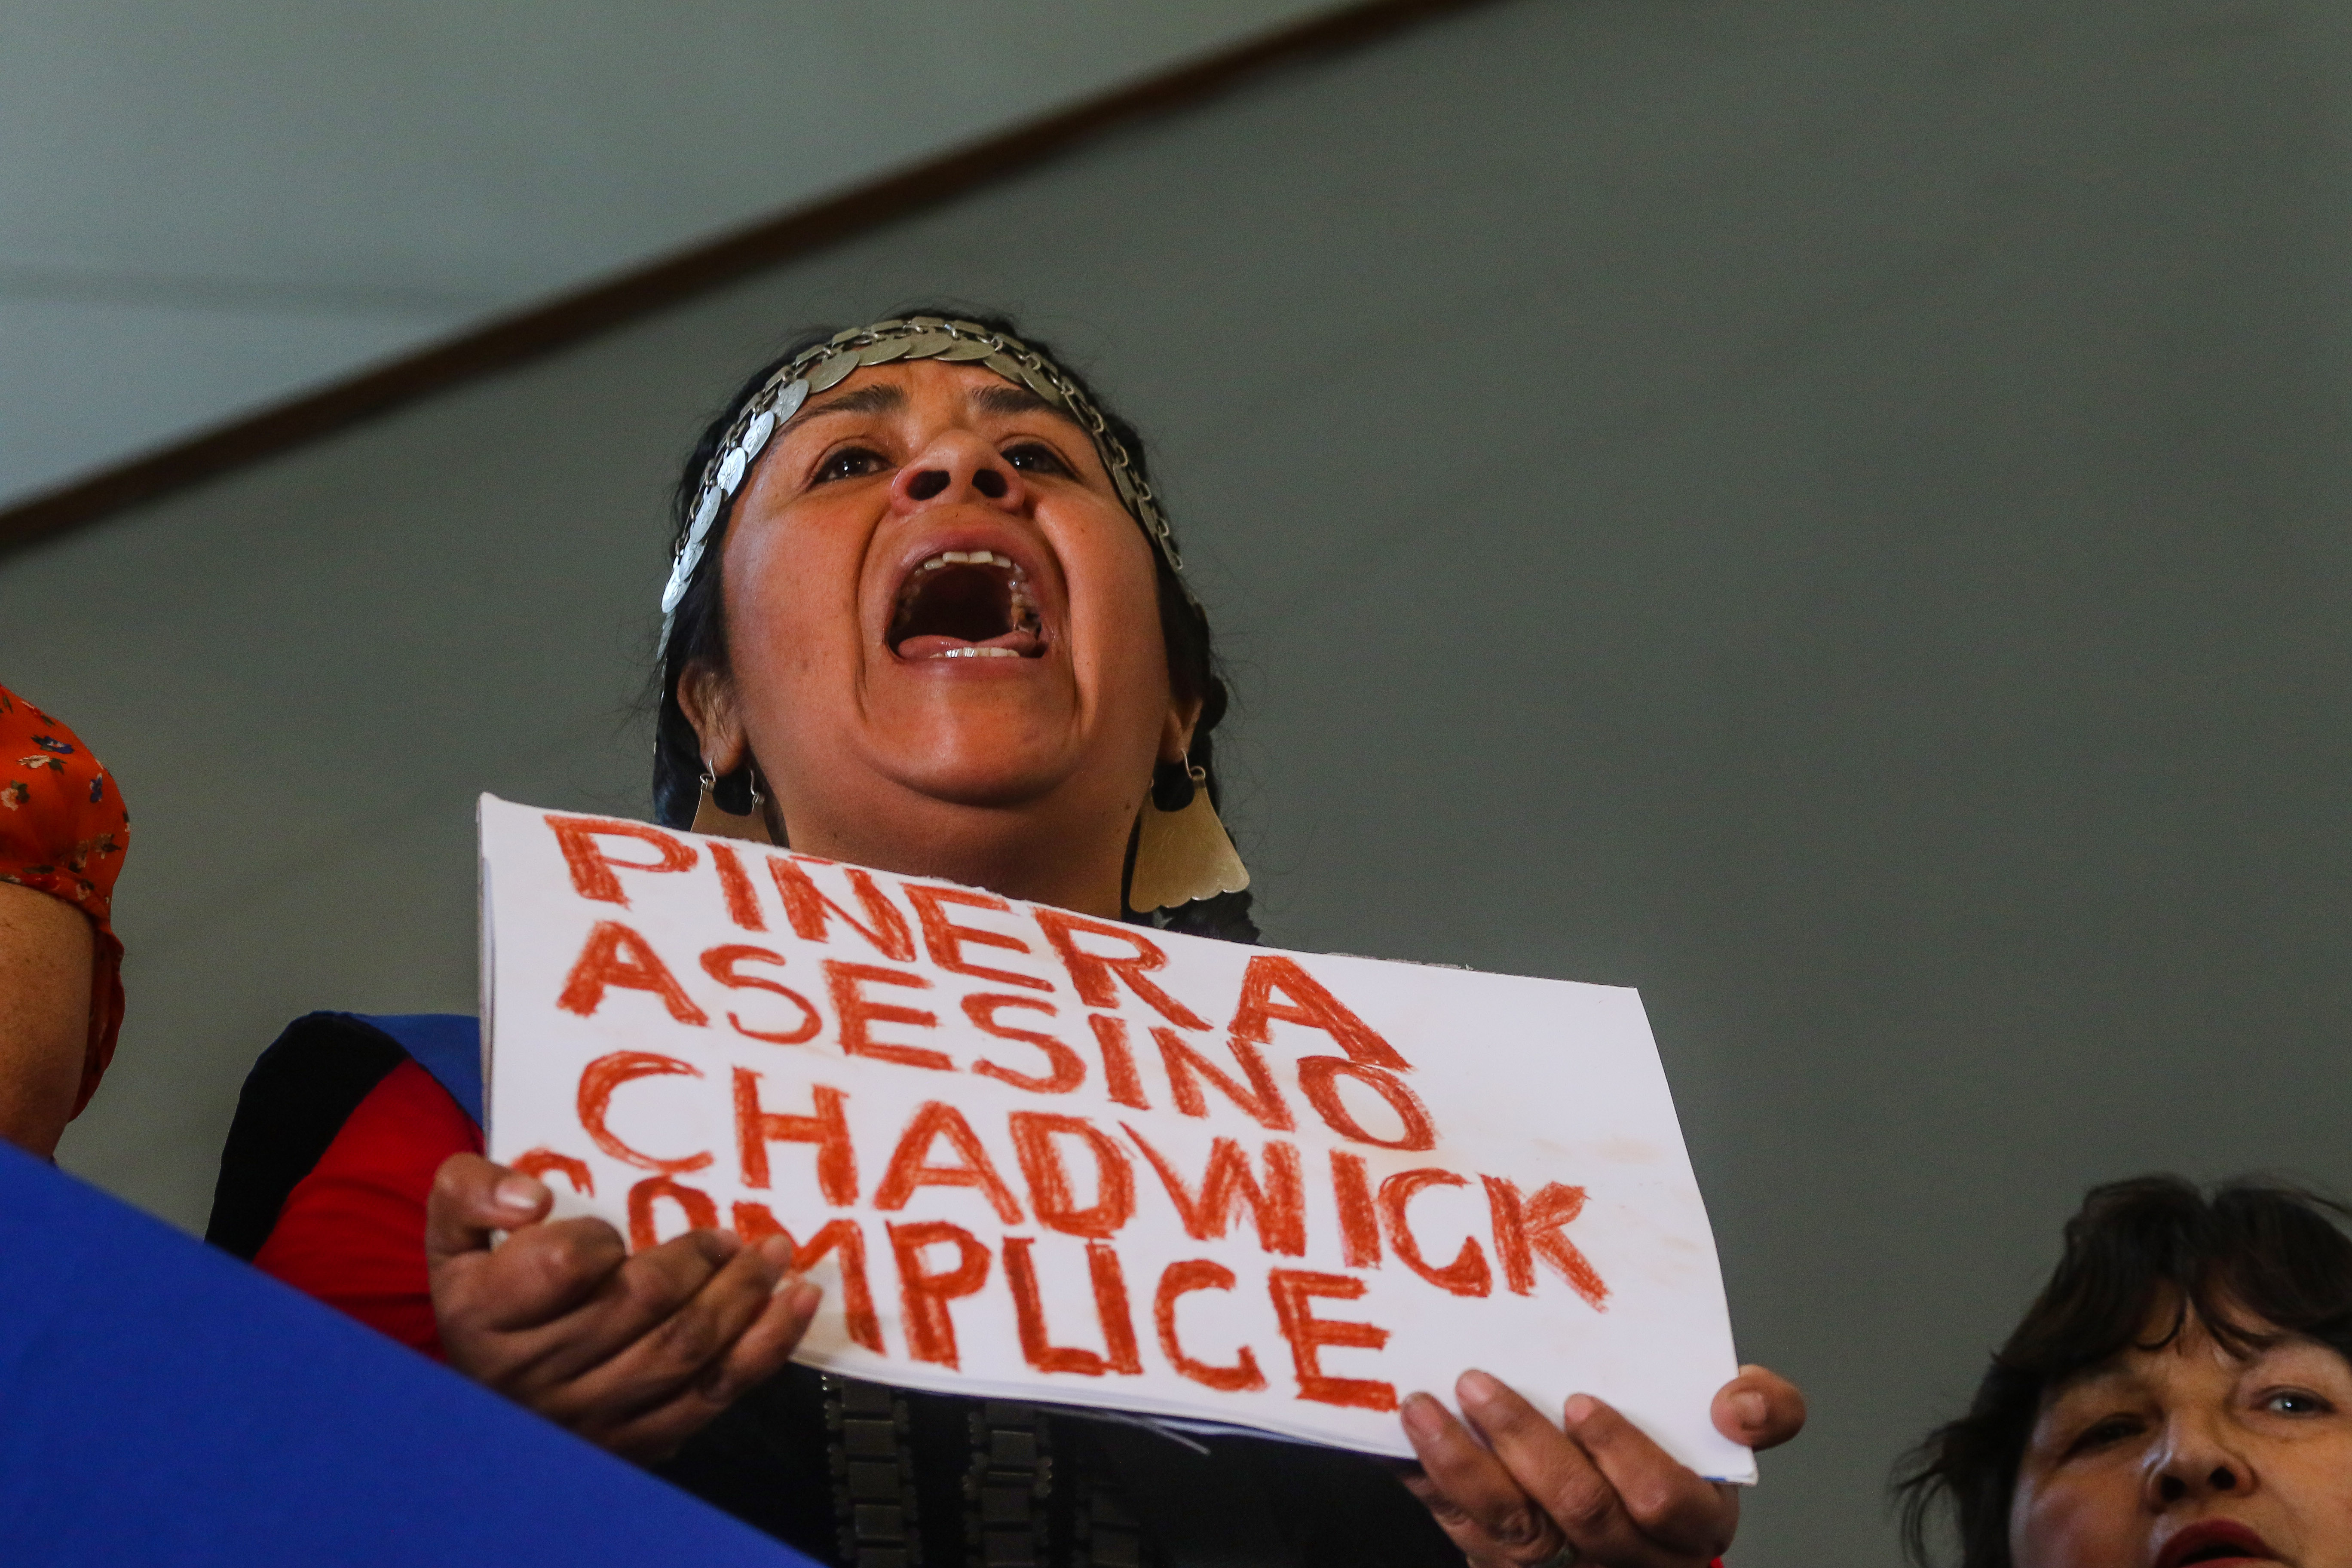 15 de Noviembre de 2018 / SANTIAGO Una mapuche se manifiesta con un cartel con la leyenda "Piñera Asesino Chadwick Complice", al interior de la casa central de la Universidad de Chile, durante una conferencia de prensa de diversas organizaciones sociales, repudiando el asesinato del comunero Camilo Catrillanca. FOTO: HANS SCOTT / AGENCIAUNO